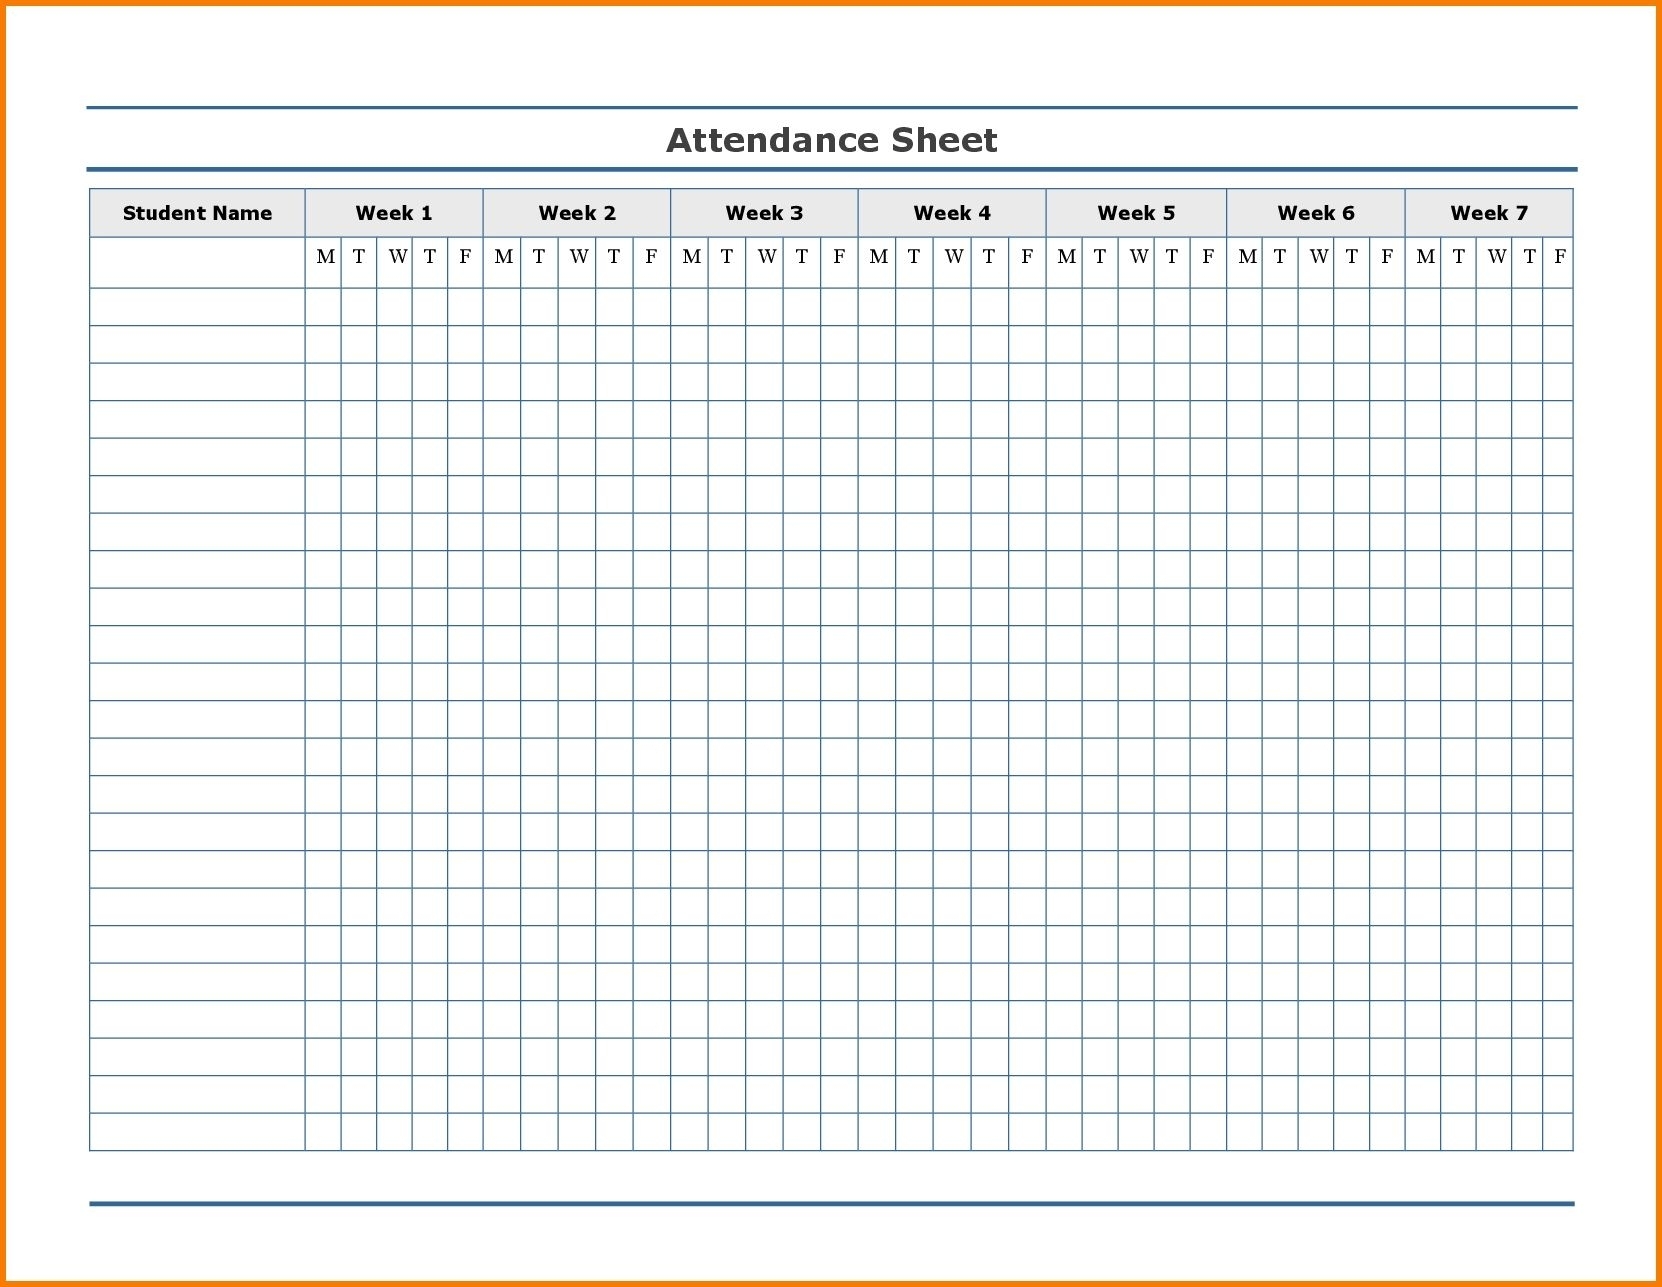 Free Employee Attendance Calendar | Employee Tracker for Employeee Attendance Calendar For 2020